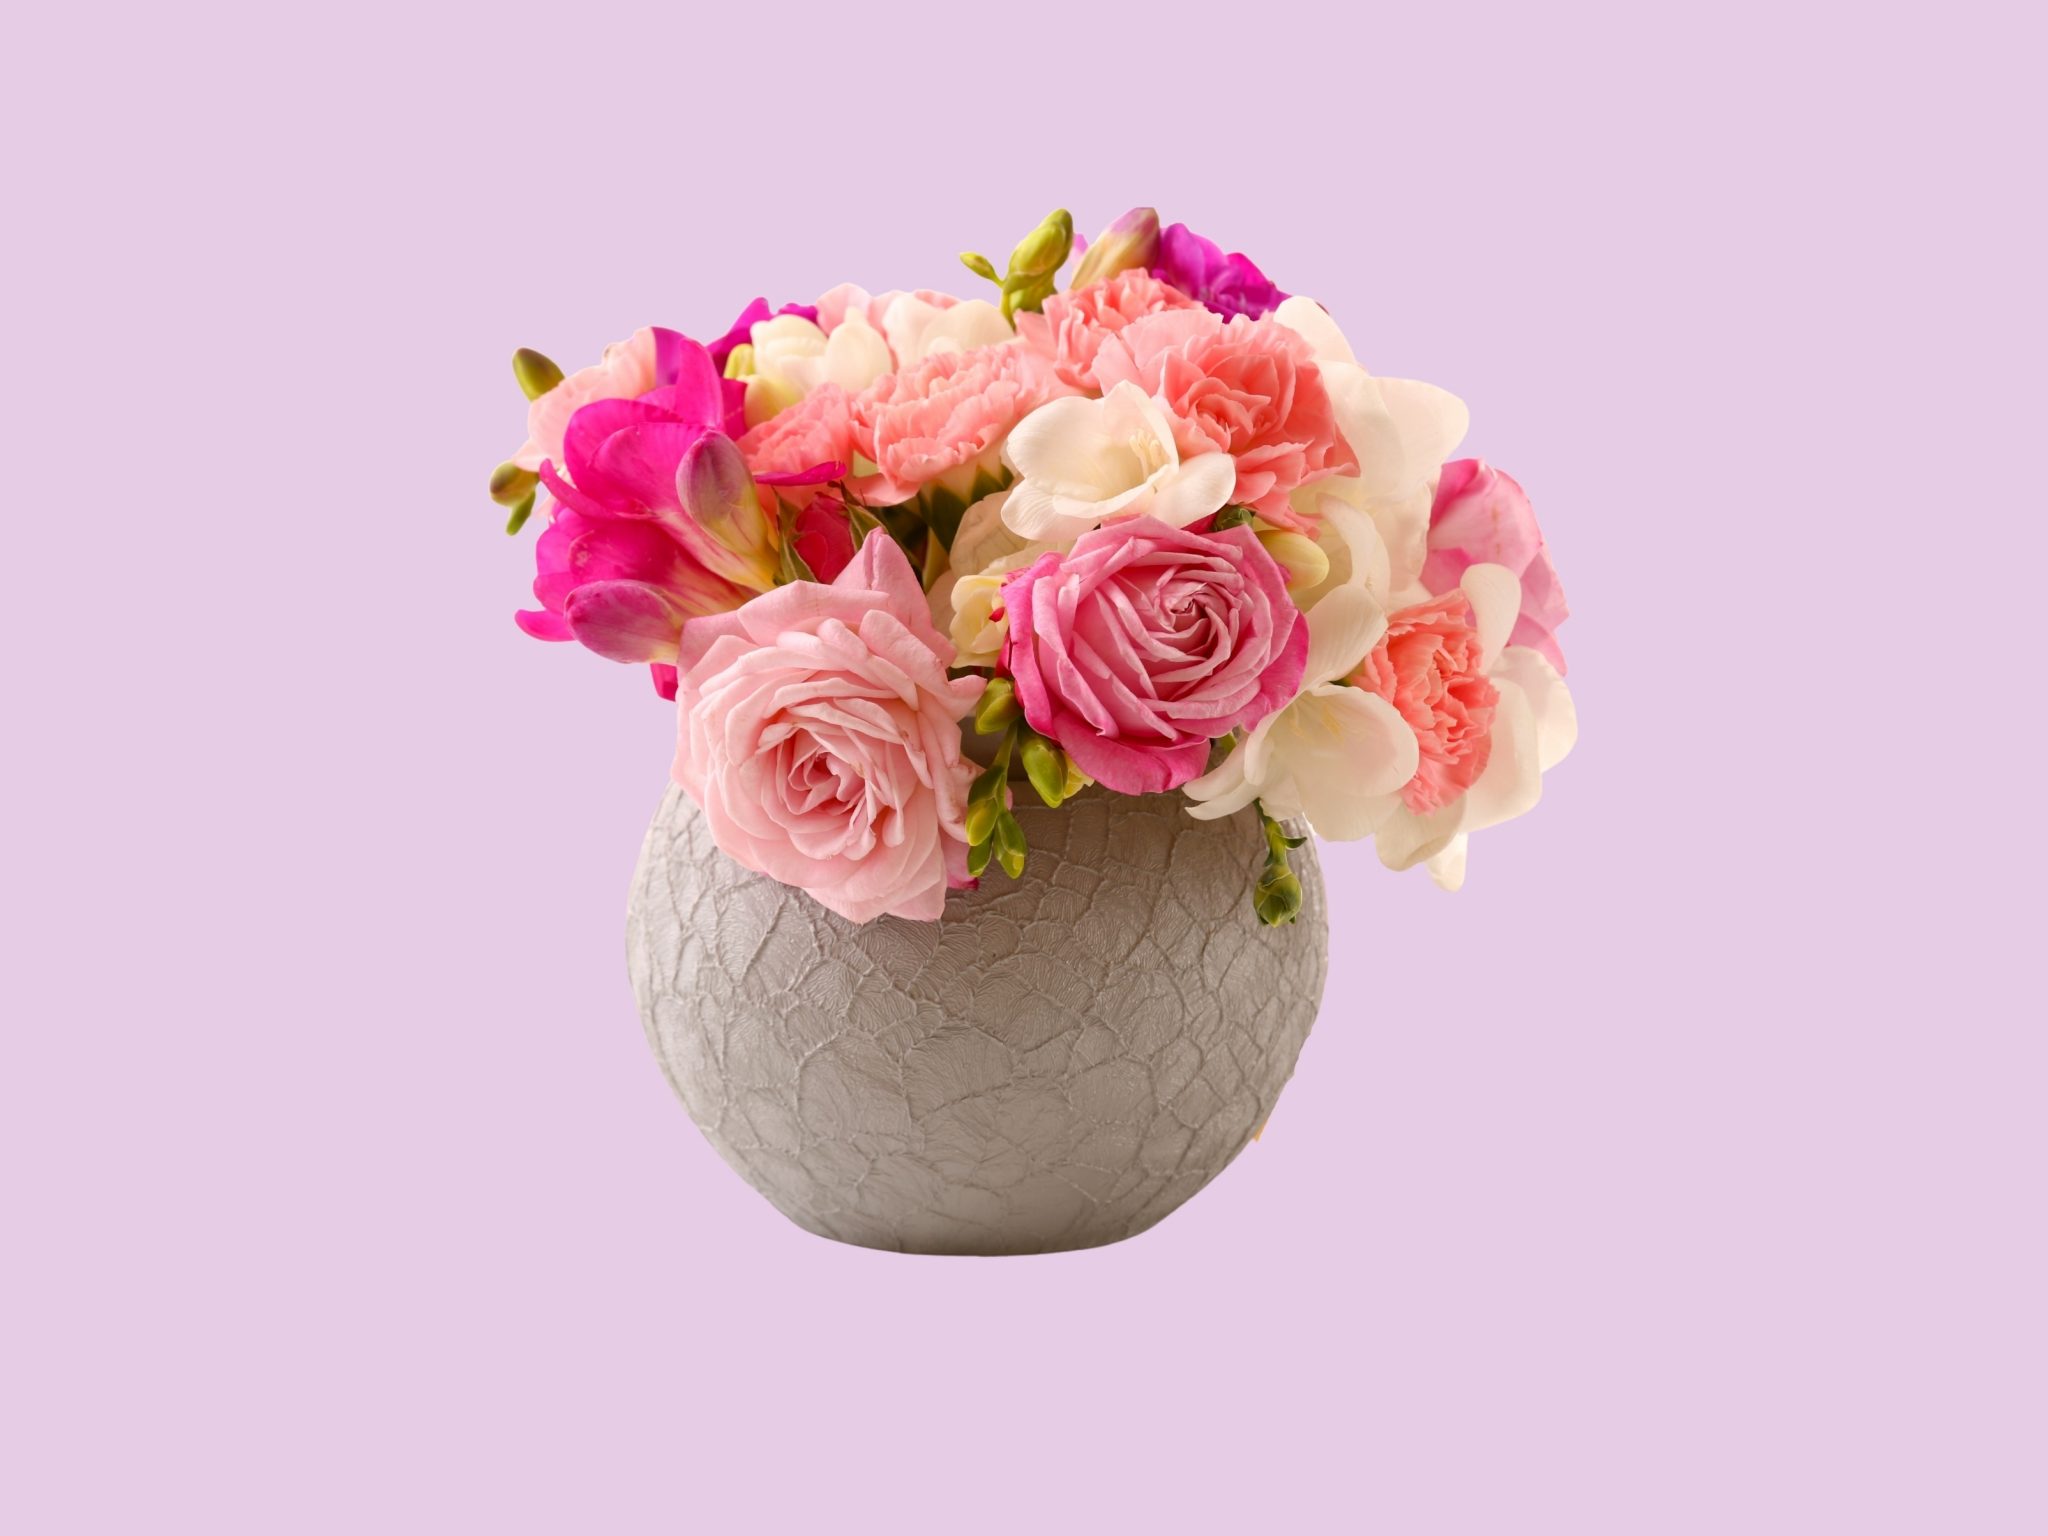 2048x1536 wallpaper Vase Pink Roses Floral Pot iPad Wallpaper 2048x1536 pixels resolution